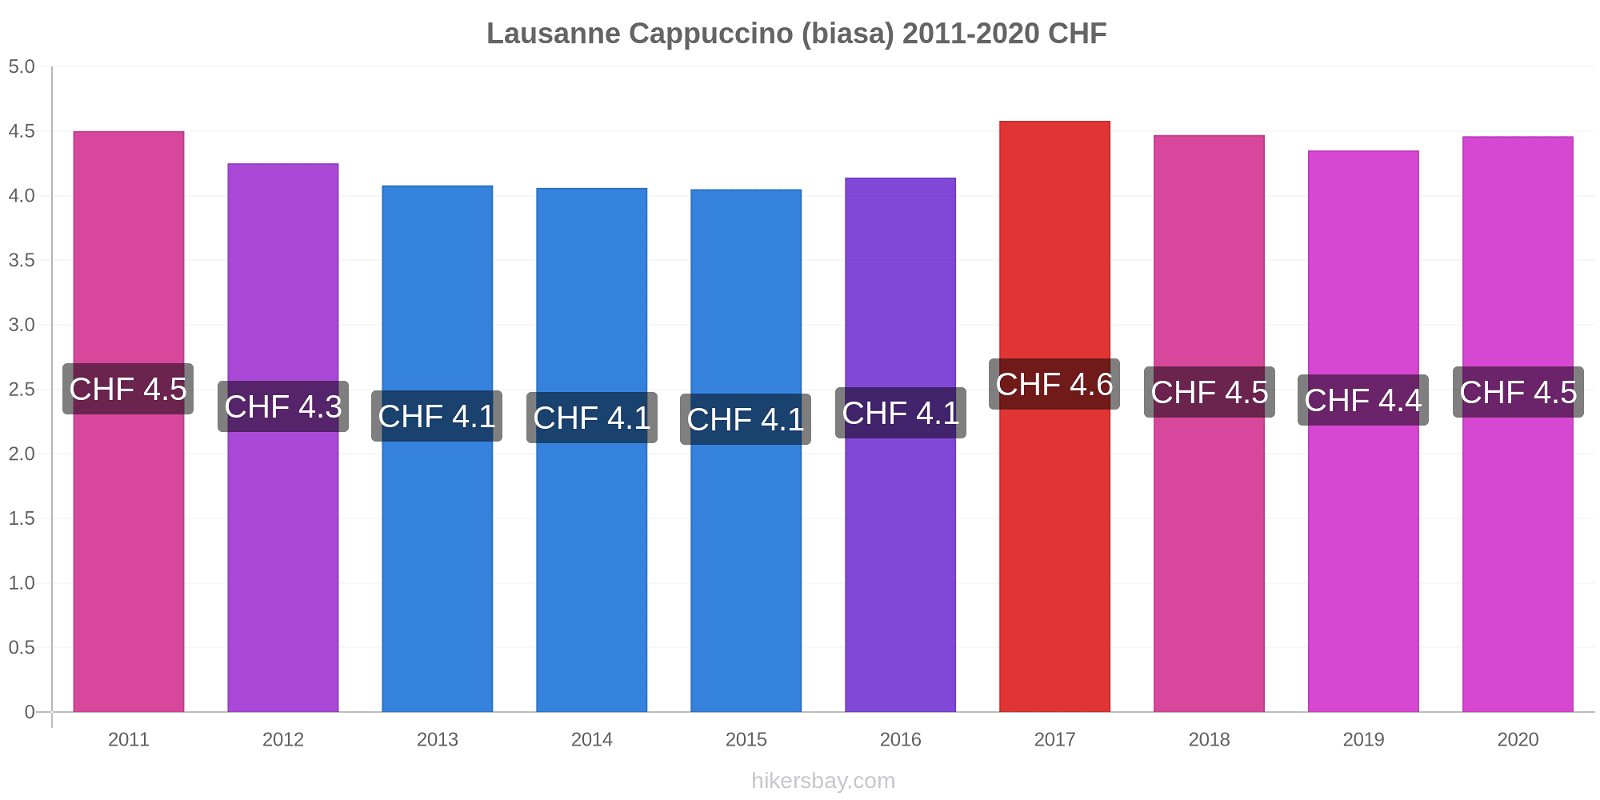 Lausanne perubahan harga Cappuccino (biasa) hikersbay.com